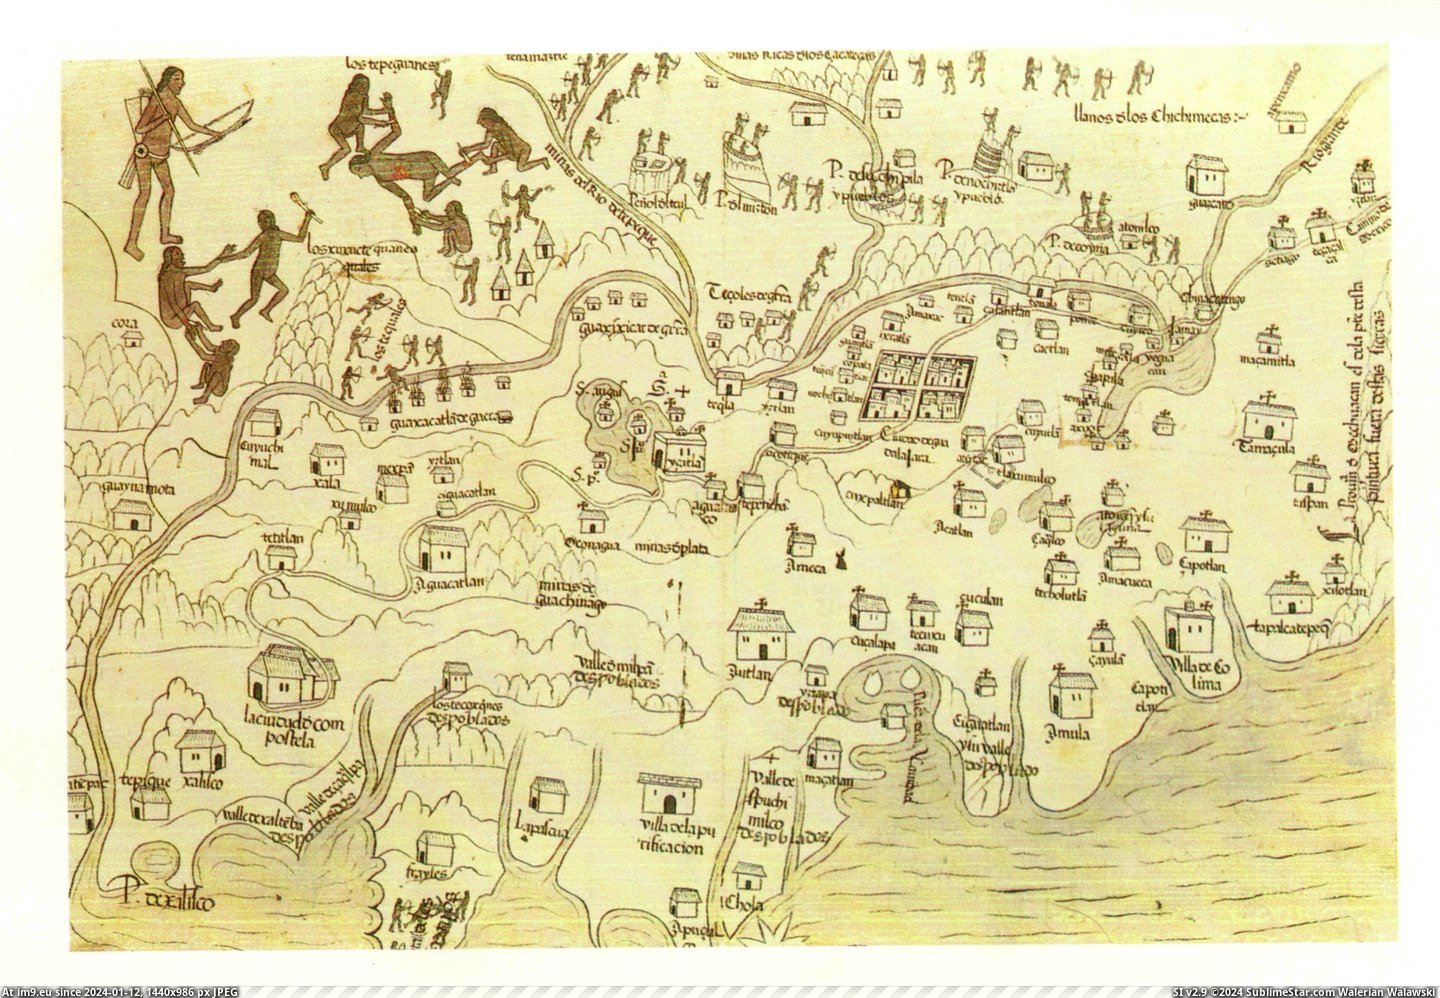 #Map #Building #Cross #Galicia #Nueva #Uprising #Shortly #Natives #Denotes [Mapporn] Map of Nueva Galicia in 1540 shortly after the uprising of natives. Each building with a cross on it denotes where the Pic. (Bild von album My r/MAPS favs))